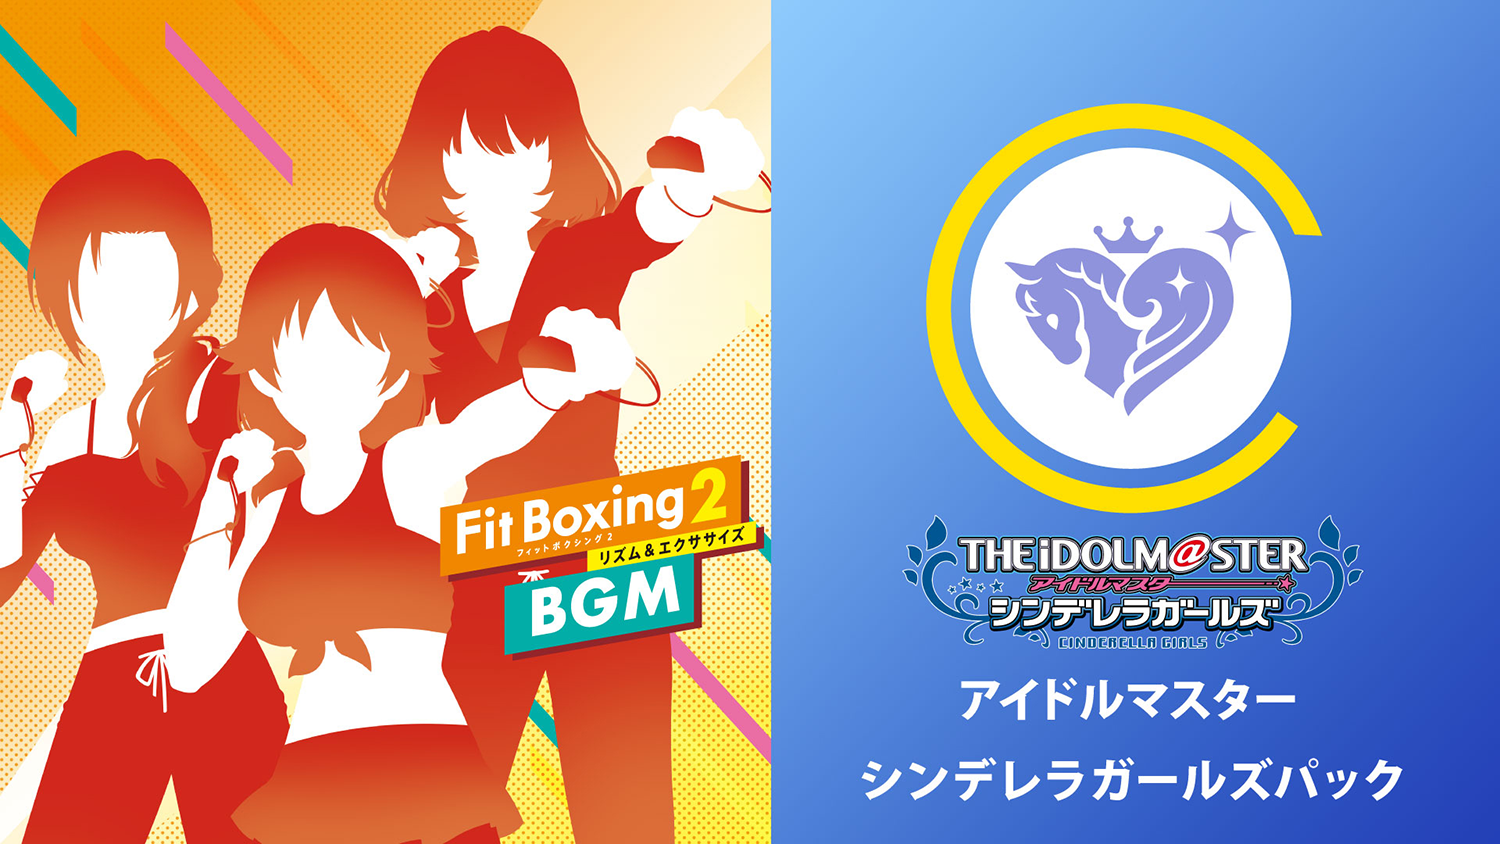 Fit Boxing2「アイドルマスター シンデレラガールズパック」配信決定のお知らせ1